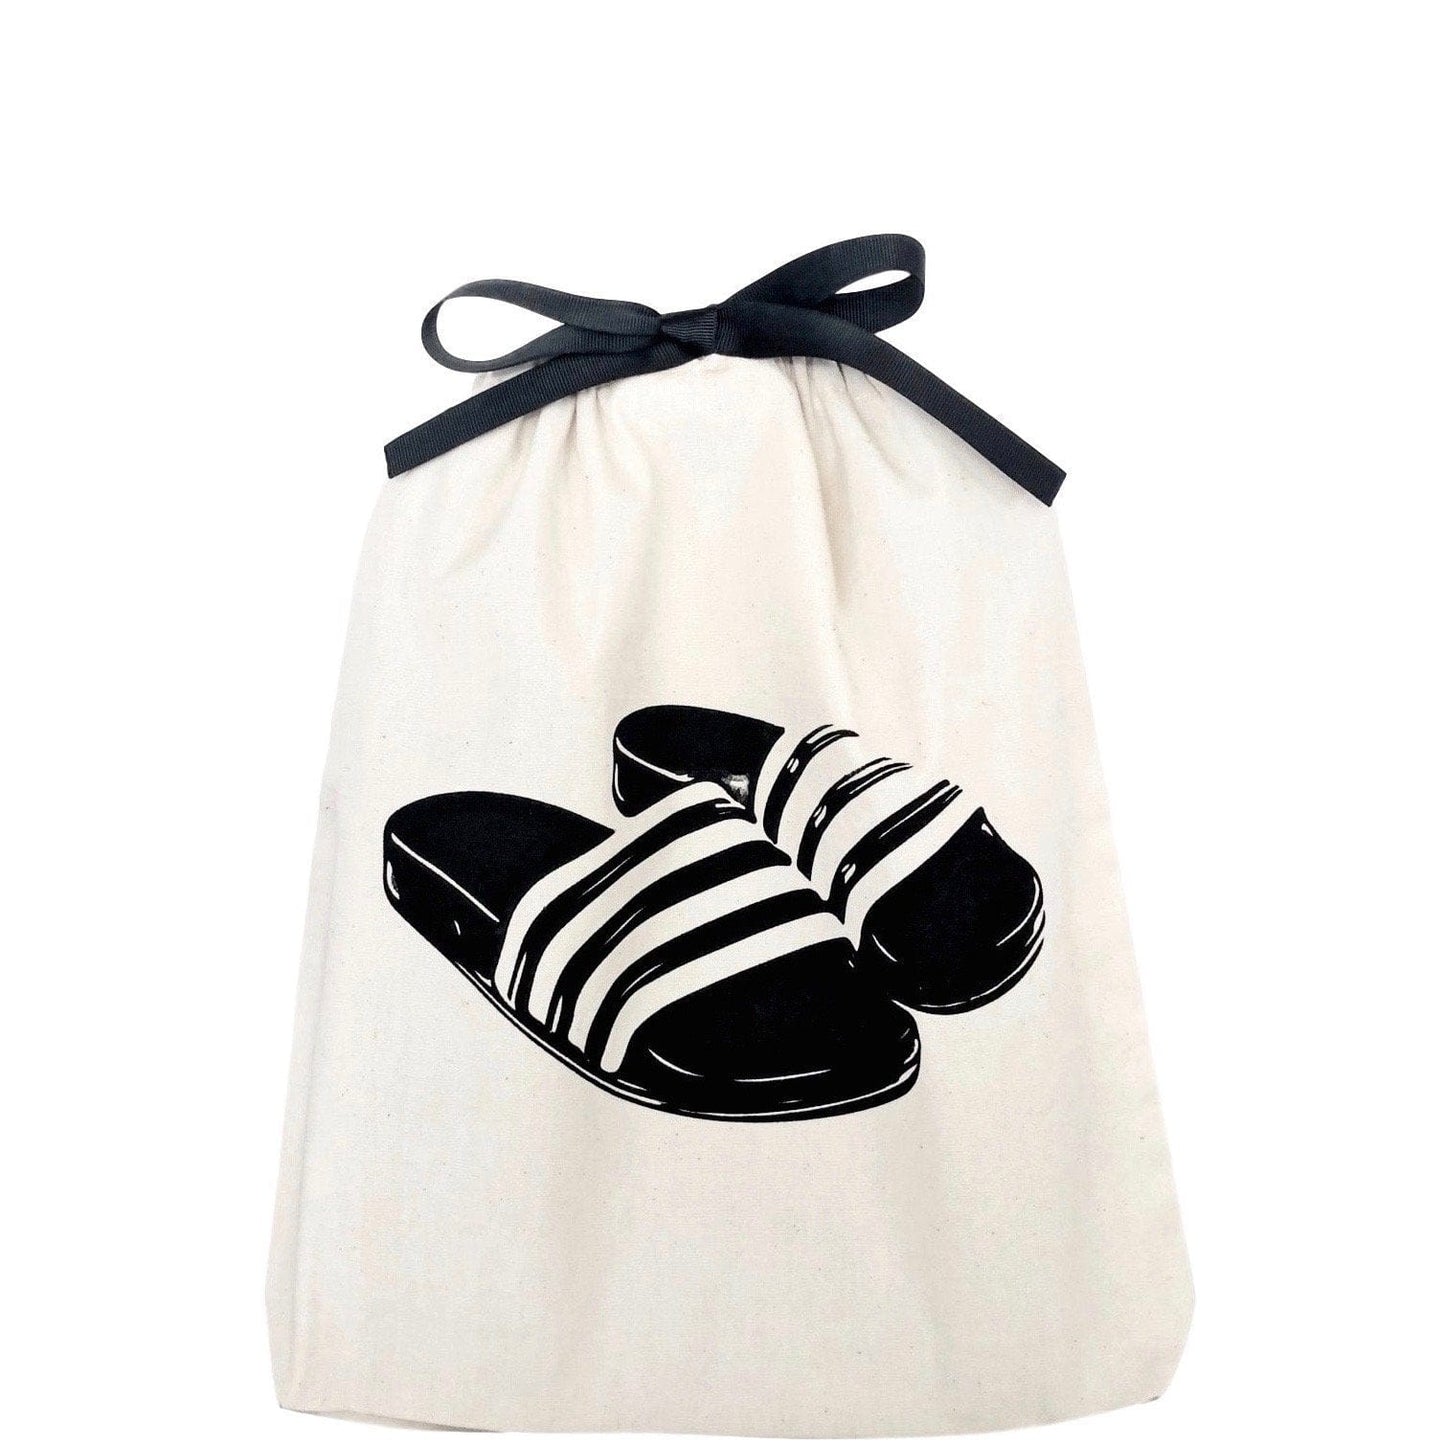 High Heel Sandal Shoe Bag | Bag-all Navy Print